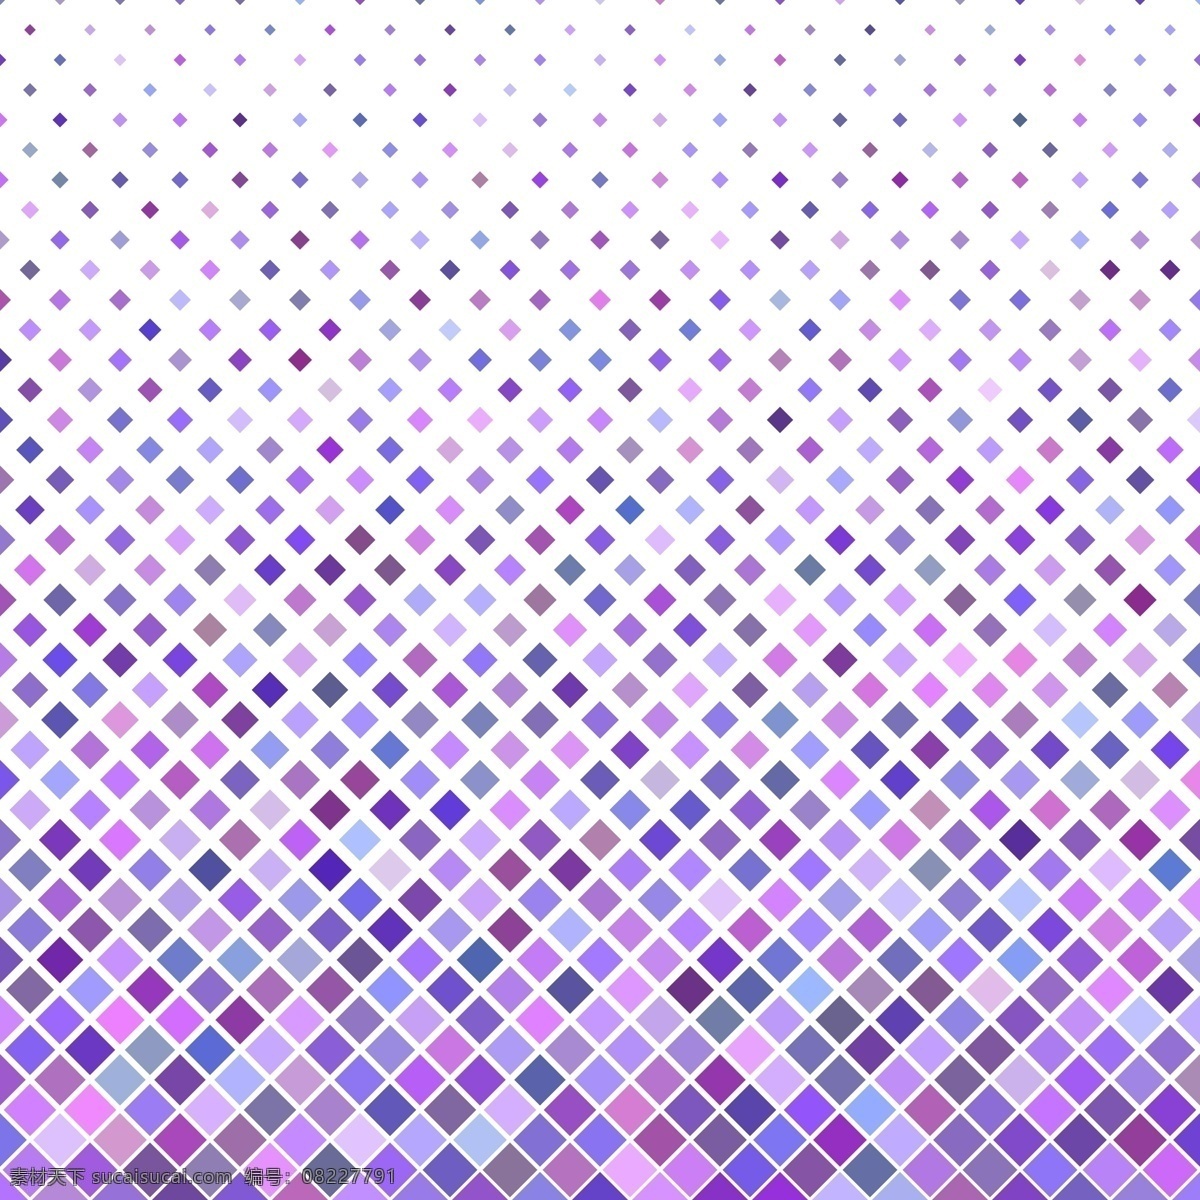 彩色 抽象 对角线 正方形 图案 背景 紫色 矢量 小册子 抽象背景 卡片 封面 纹理 模板 几何 盒子 小册子模板 多边形 墙纸 几何图案 颜色 网络 展示